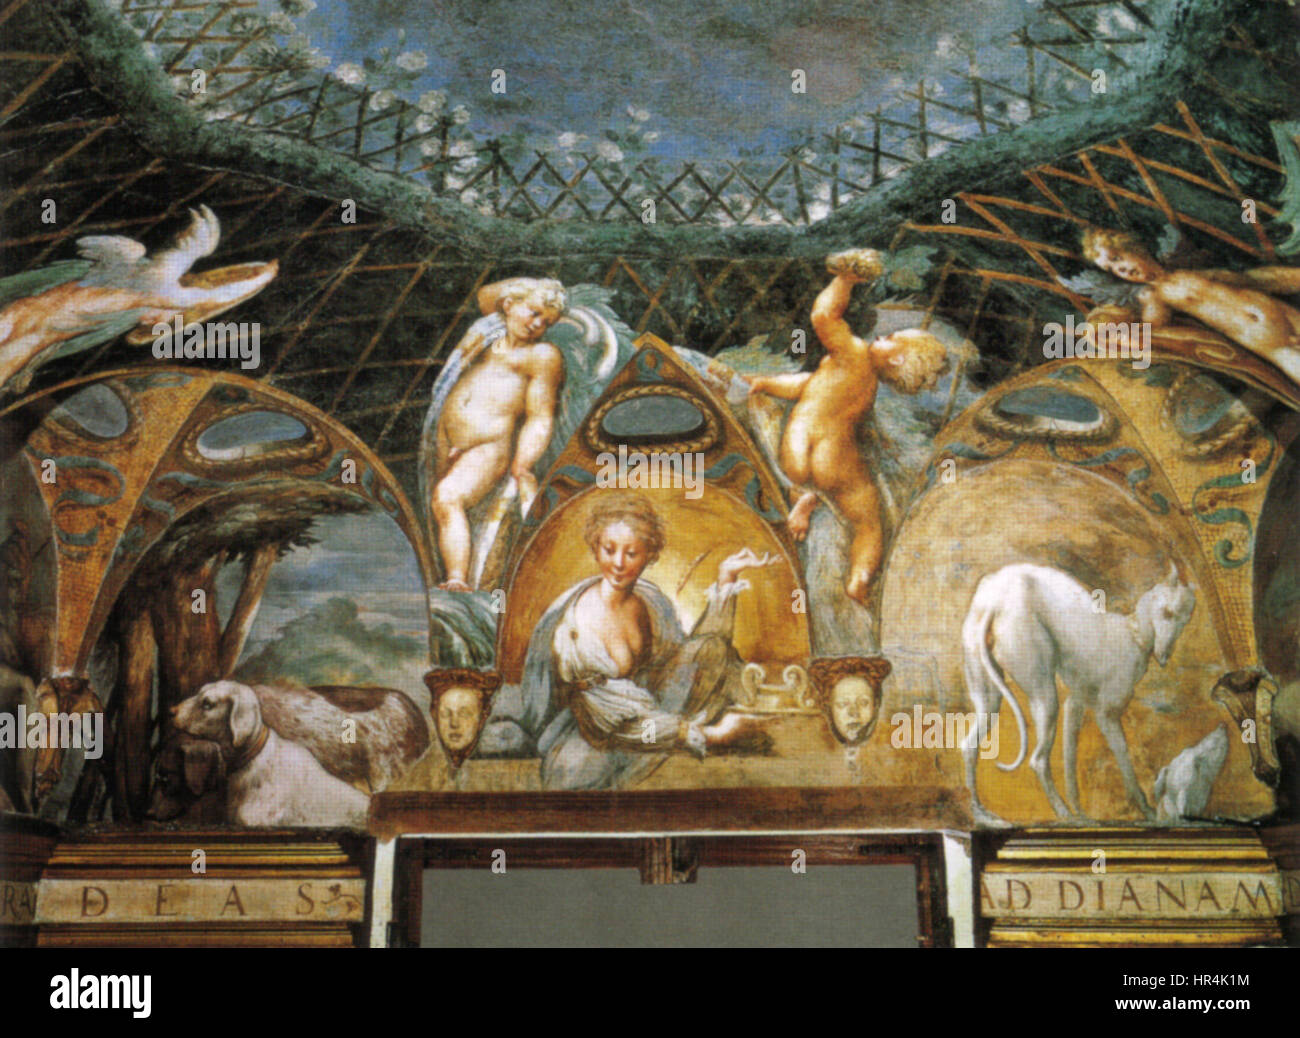 Parmigianino, affreschi di fontanellato 04 Stock Photo